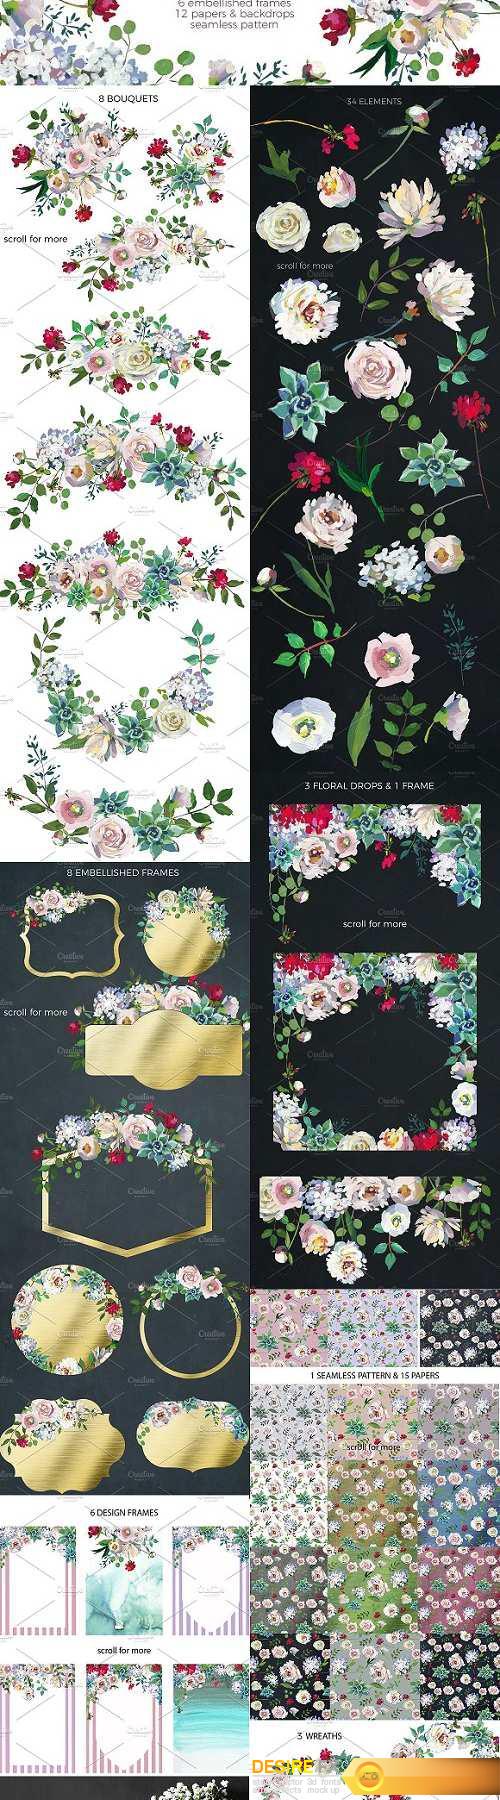 Grace-Floral Design Collection - 1194906